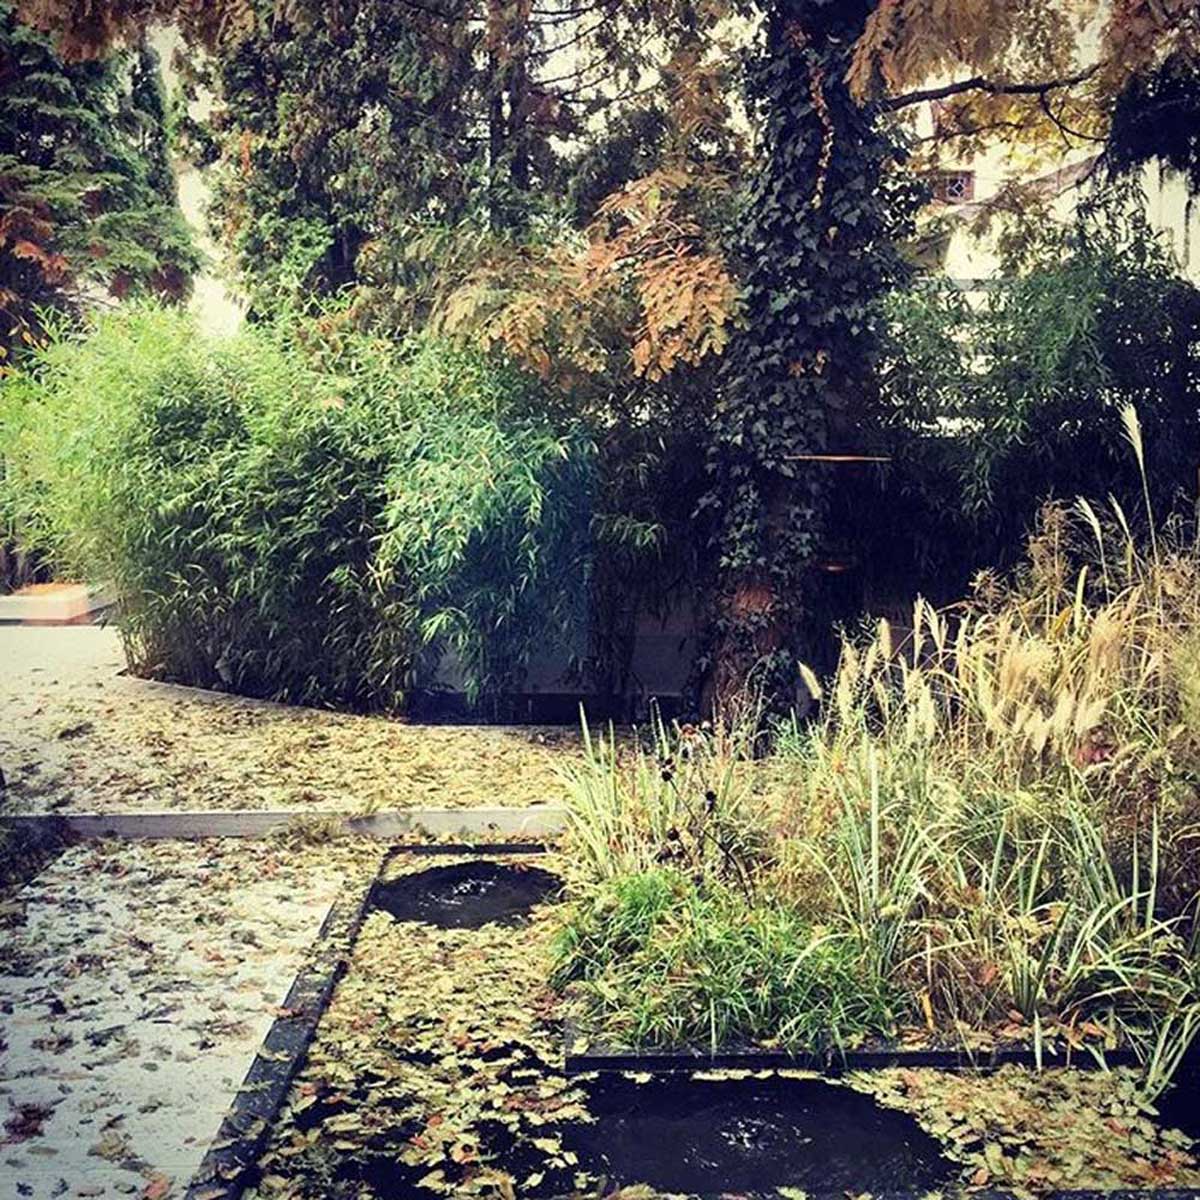 Bambusy w ogrodzie Miejski ogród w stylu francuskim Ogród z trawami Strefa wypoczynku w miejskim ogrodzie Woda w ogrodzie miejskim Nowoczesny ogród na Bielanach Nowoczesny klimat w miejskim ogrodzie Trawy ozdobne w ogrodzie Ogrody gwiazd